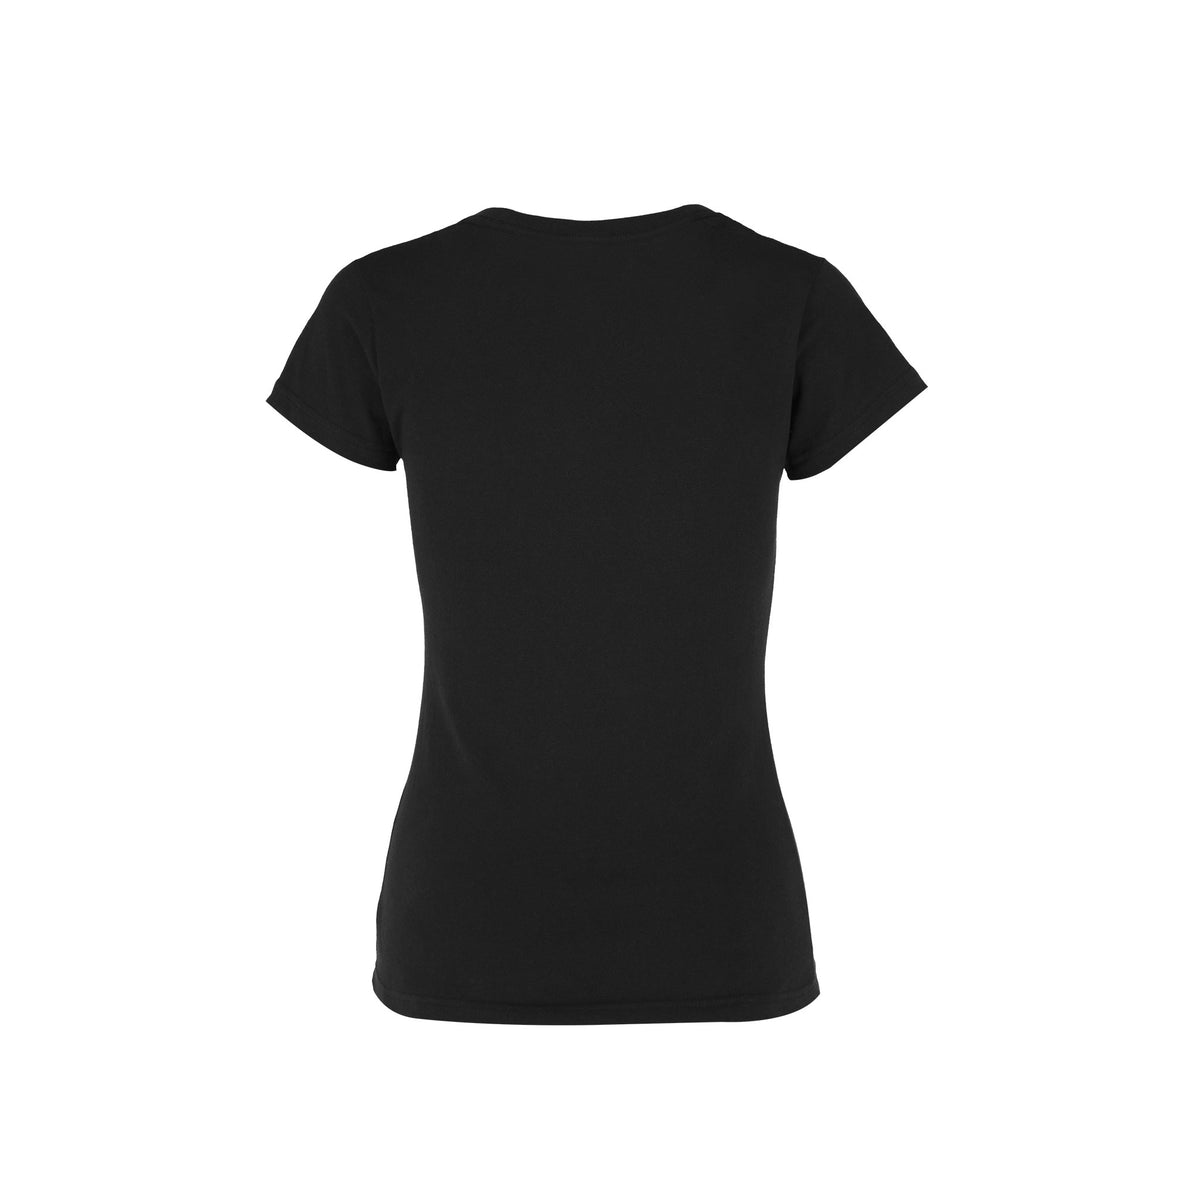 Women’s V-Neck Short Sleeve Silhouette T-Shirt (Black) – Yazbek USA Mint